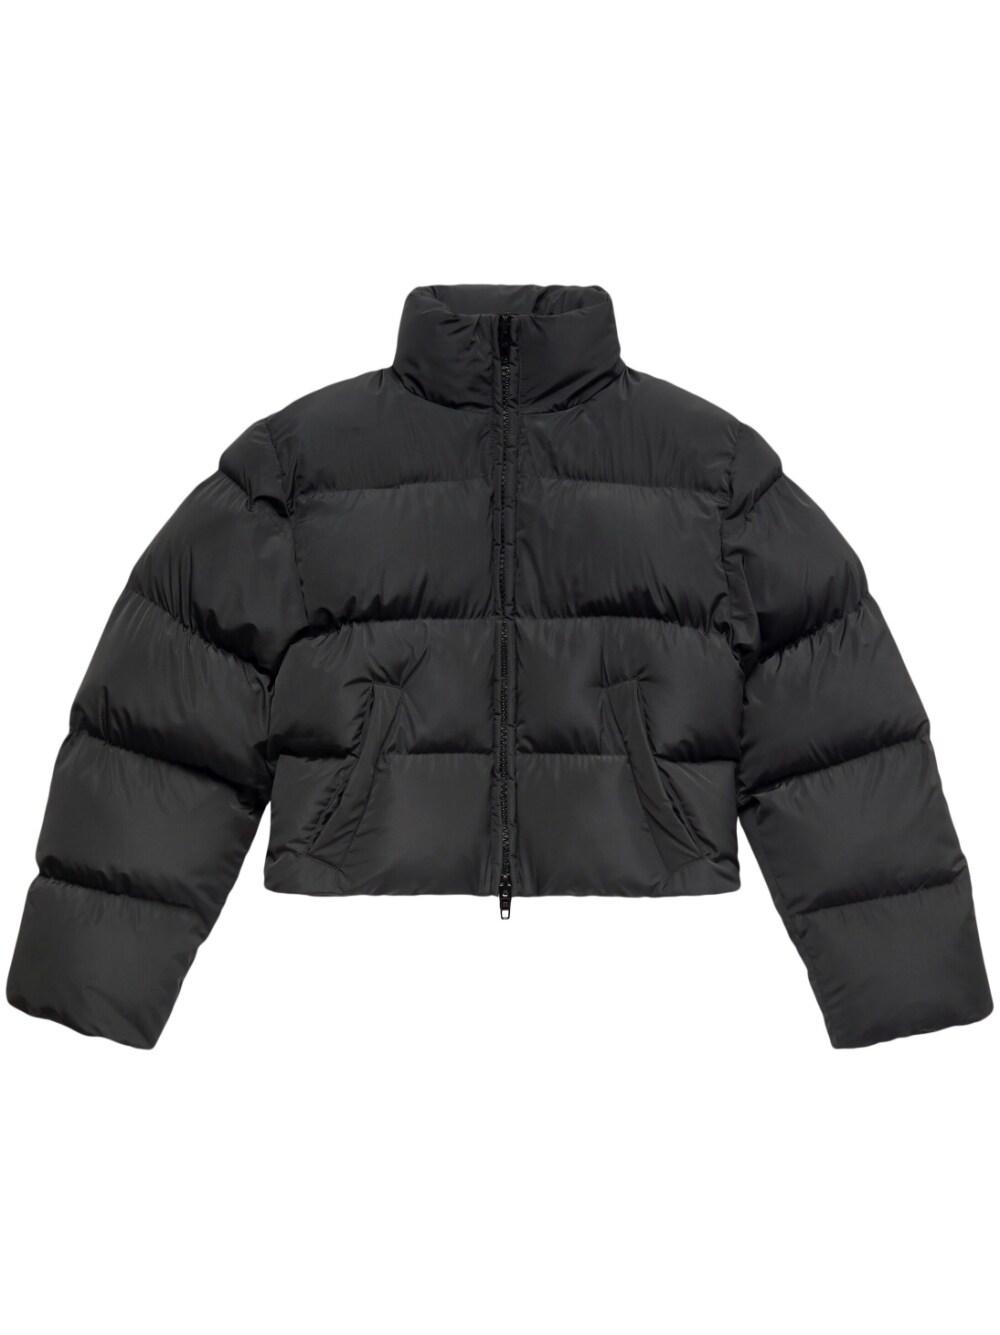 Balenciaga Shrunk Puffer Jacket in Black | Lyst